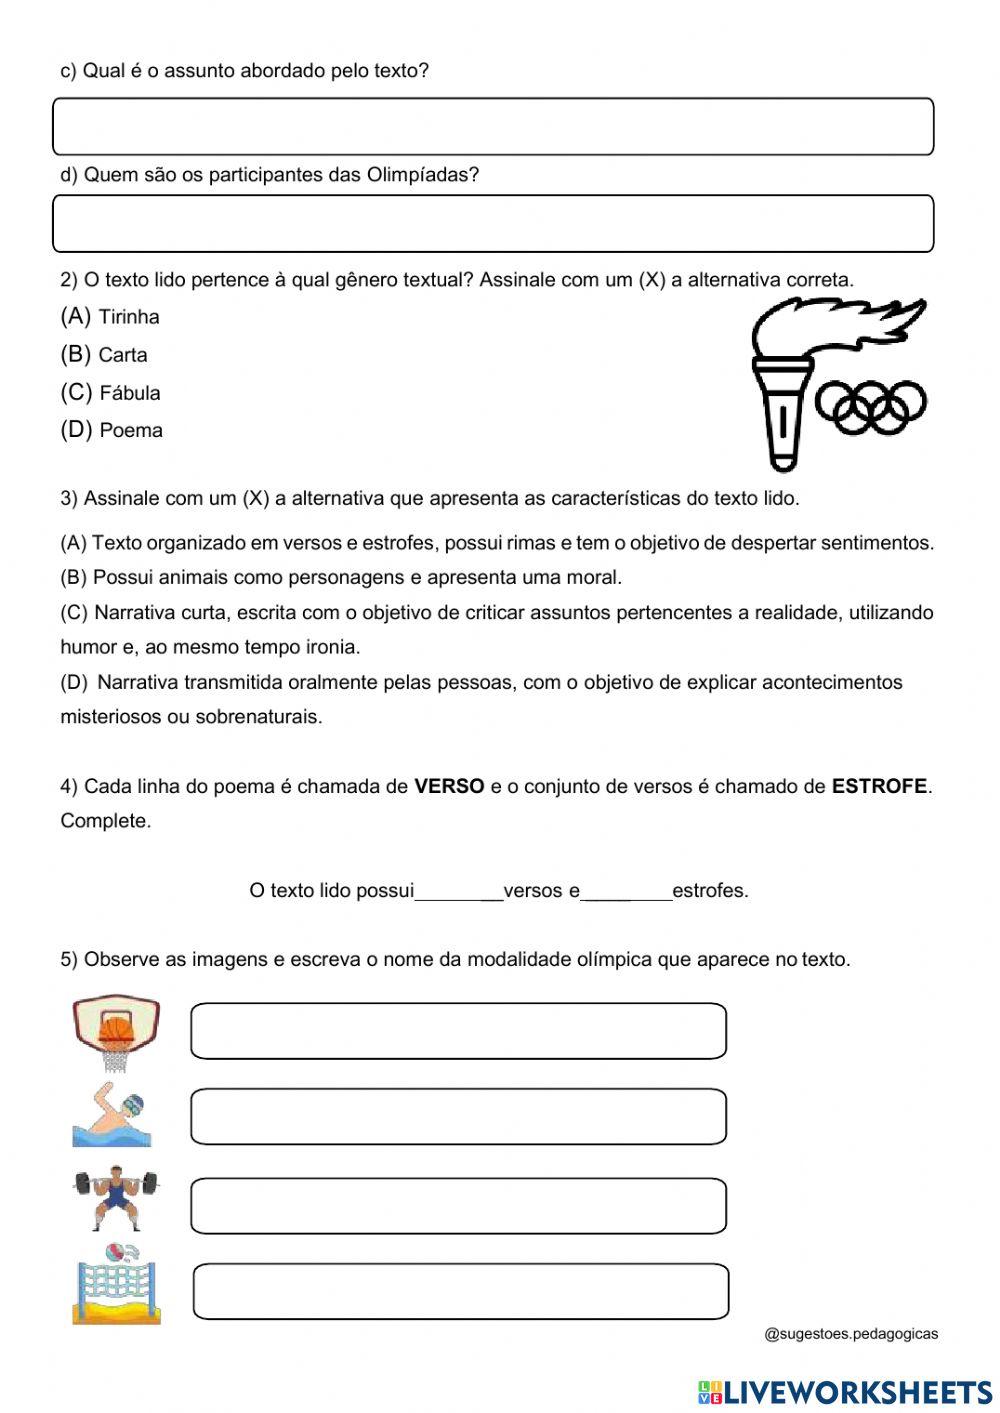 Jogos Olímpicos da bicharada - poema. Ficha interativa